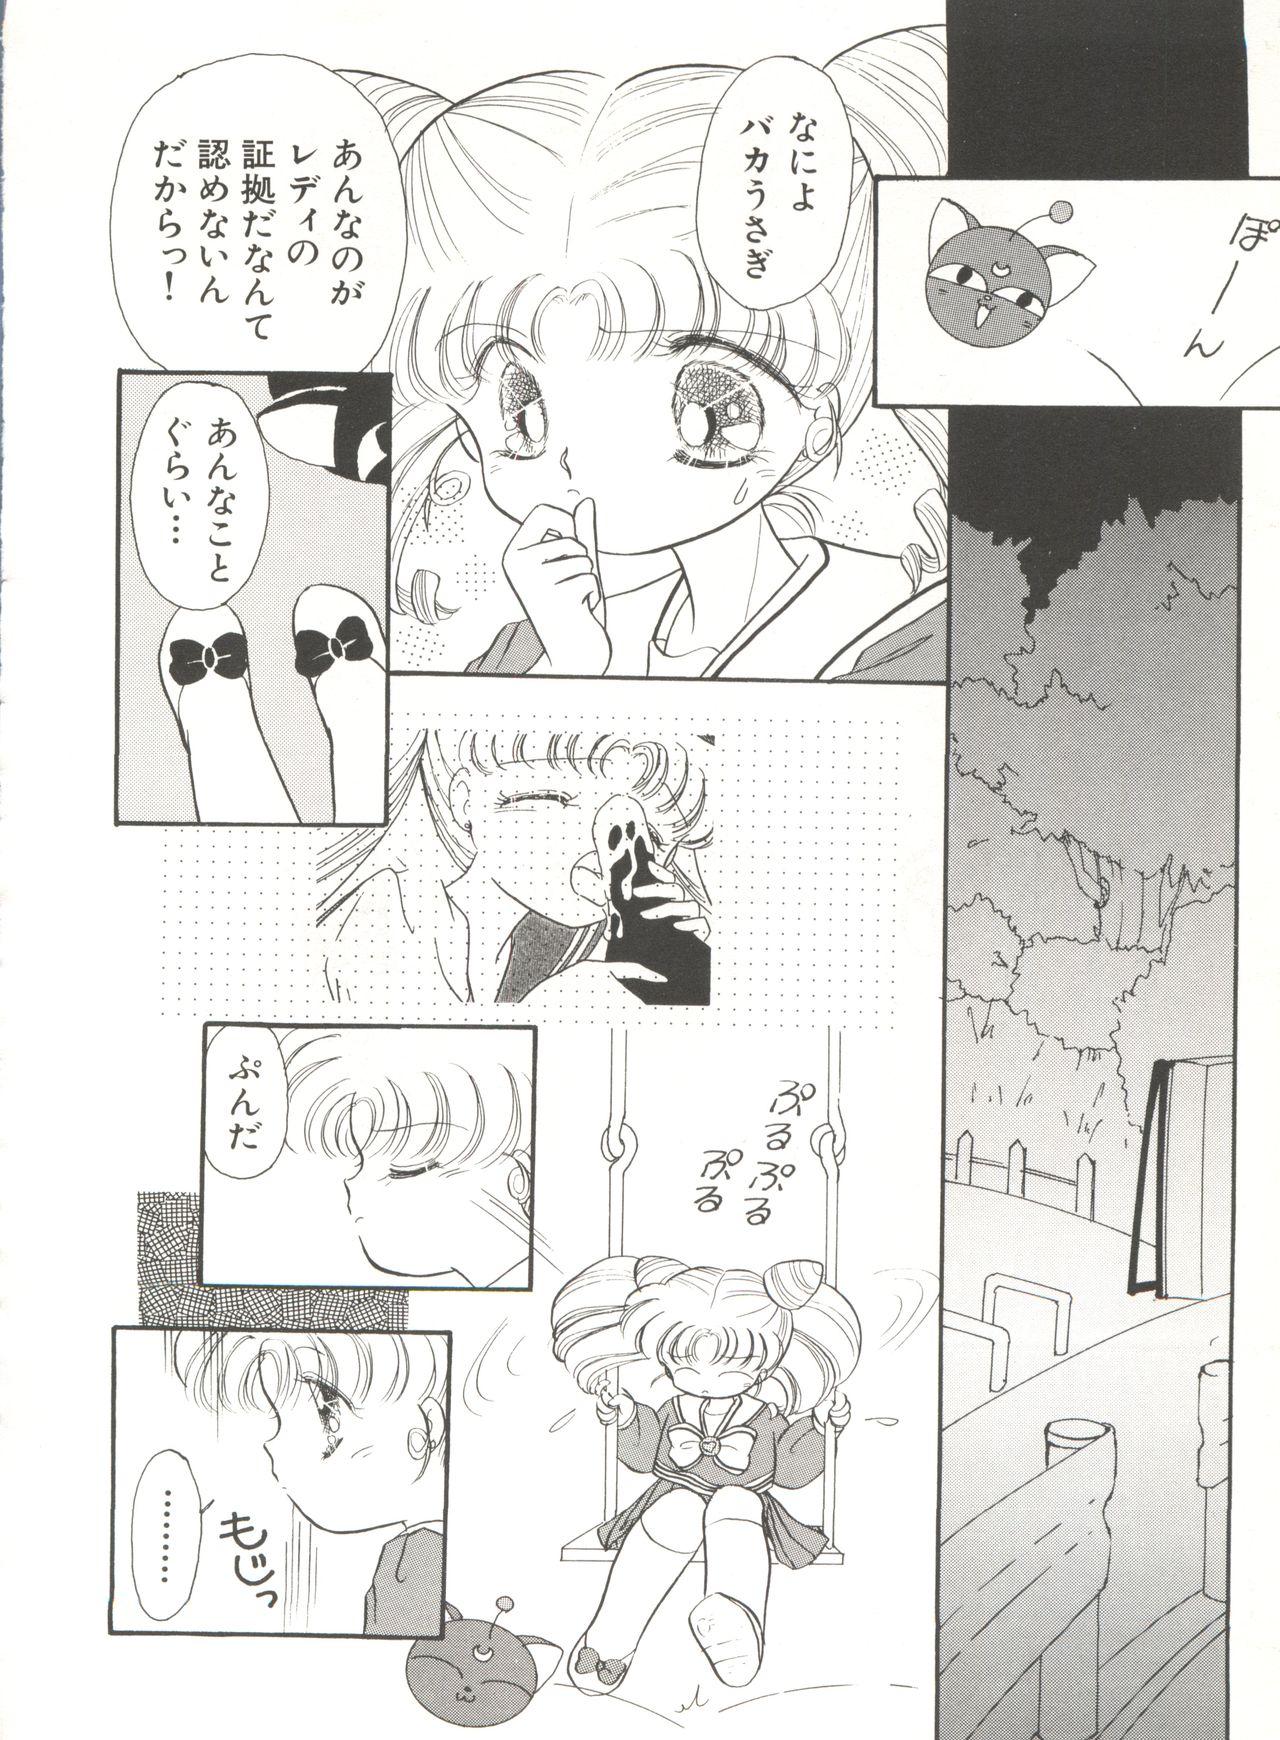 Bishoujo Doujinshi Anthology 16 - Moon Paradise 10 Tsuki no Rakuen 96